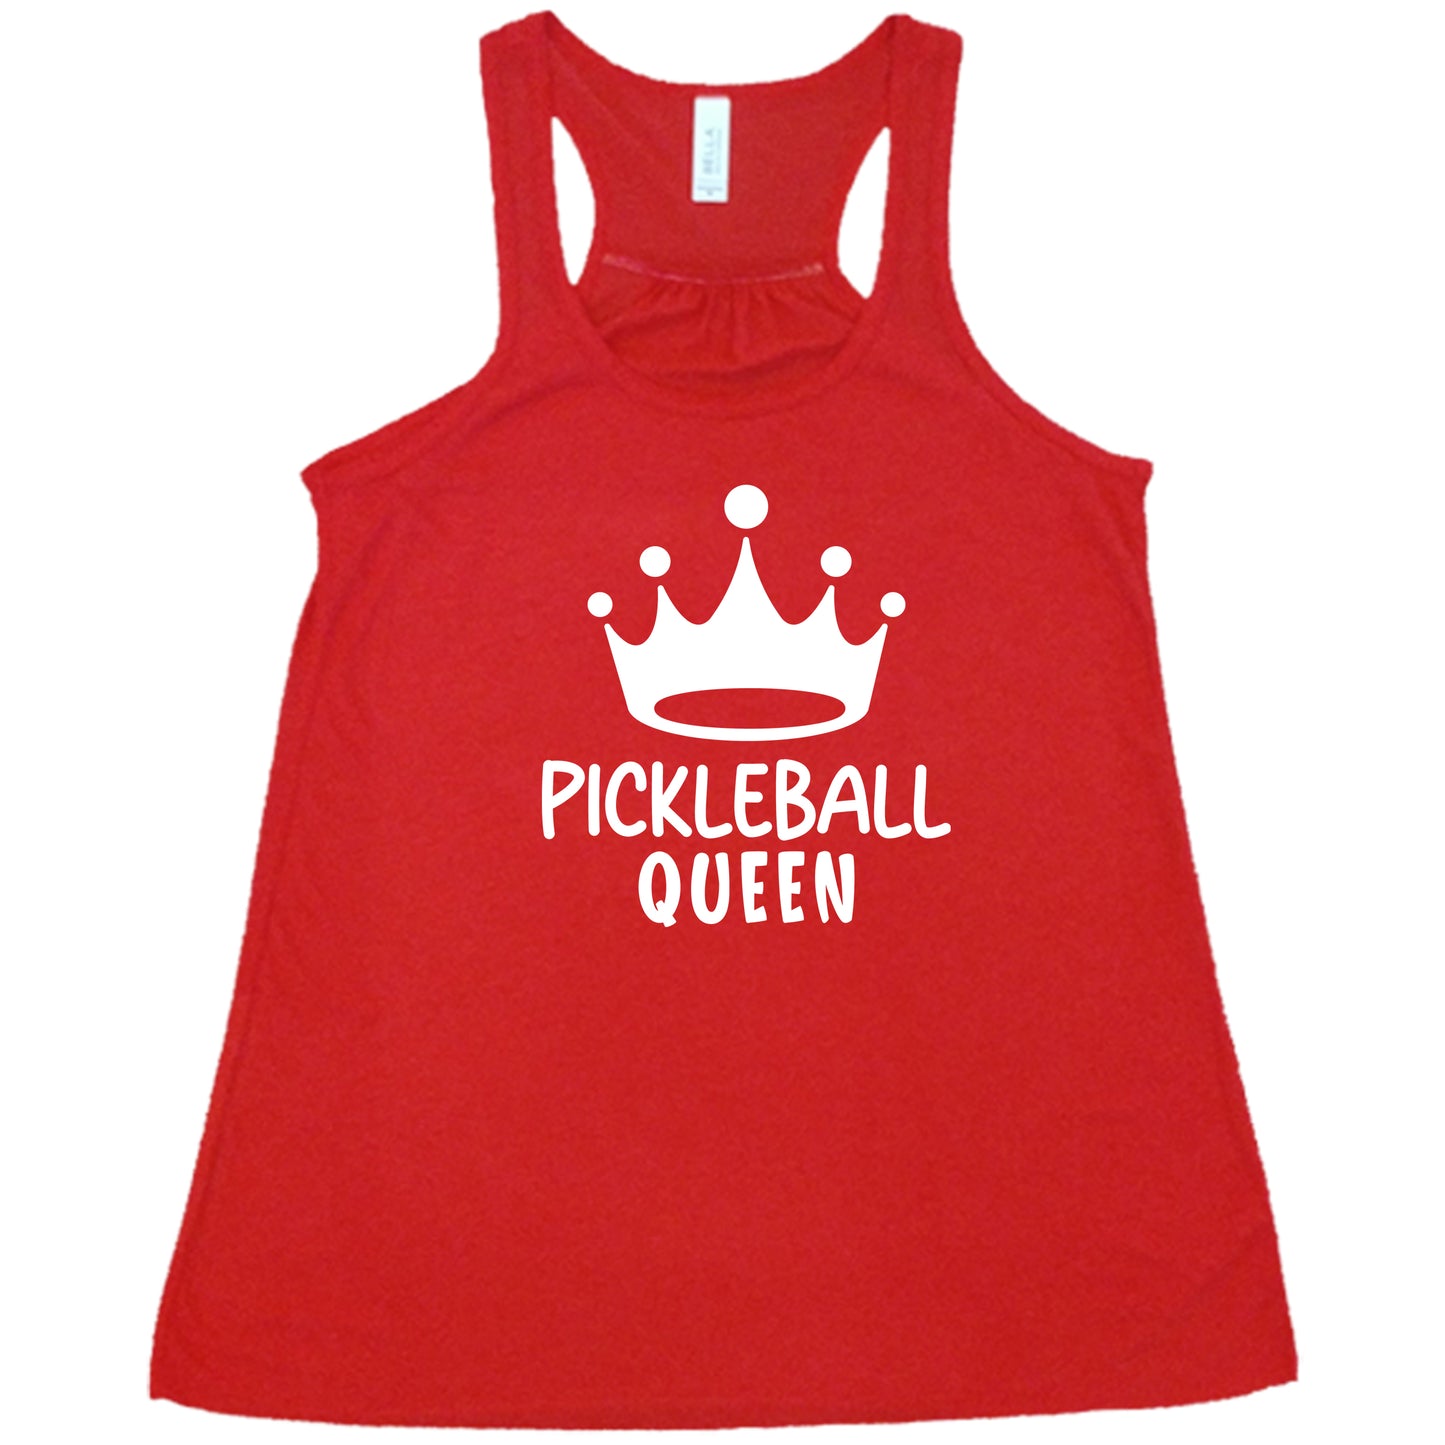 Pickleball Queen Shirt